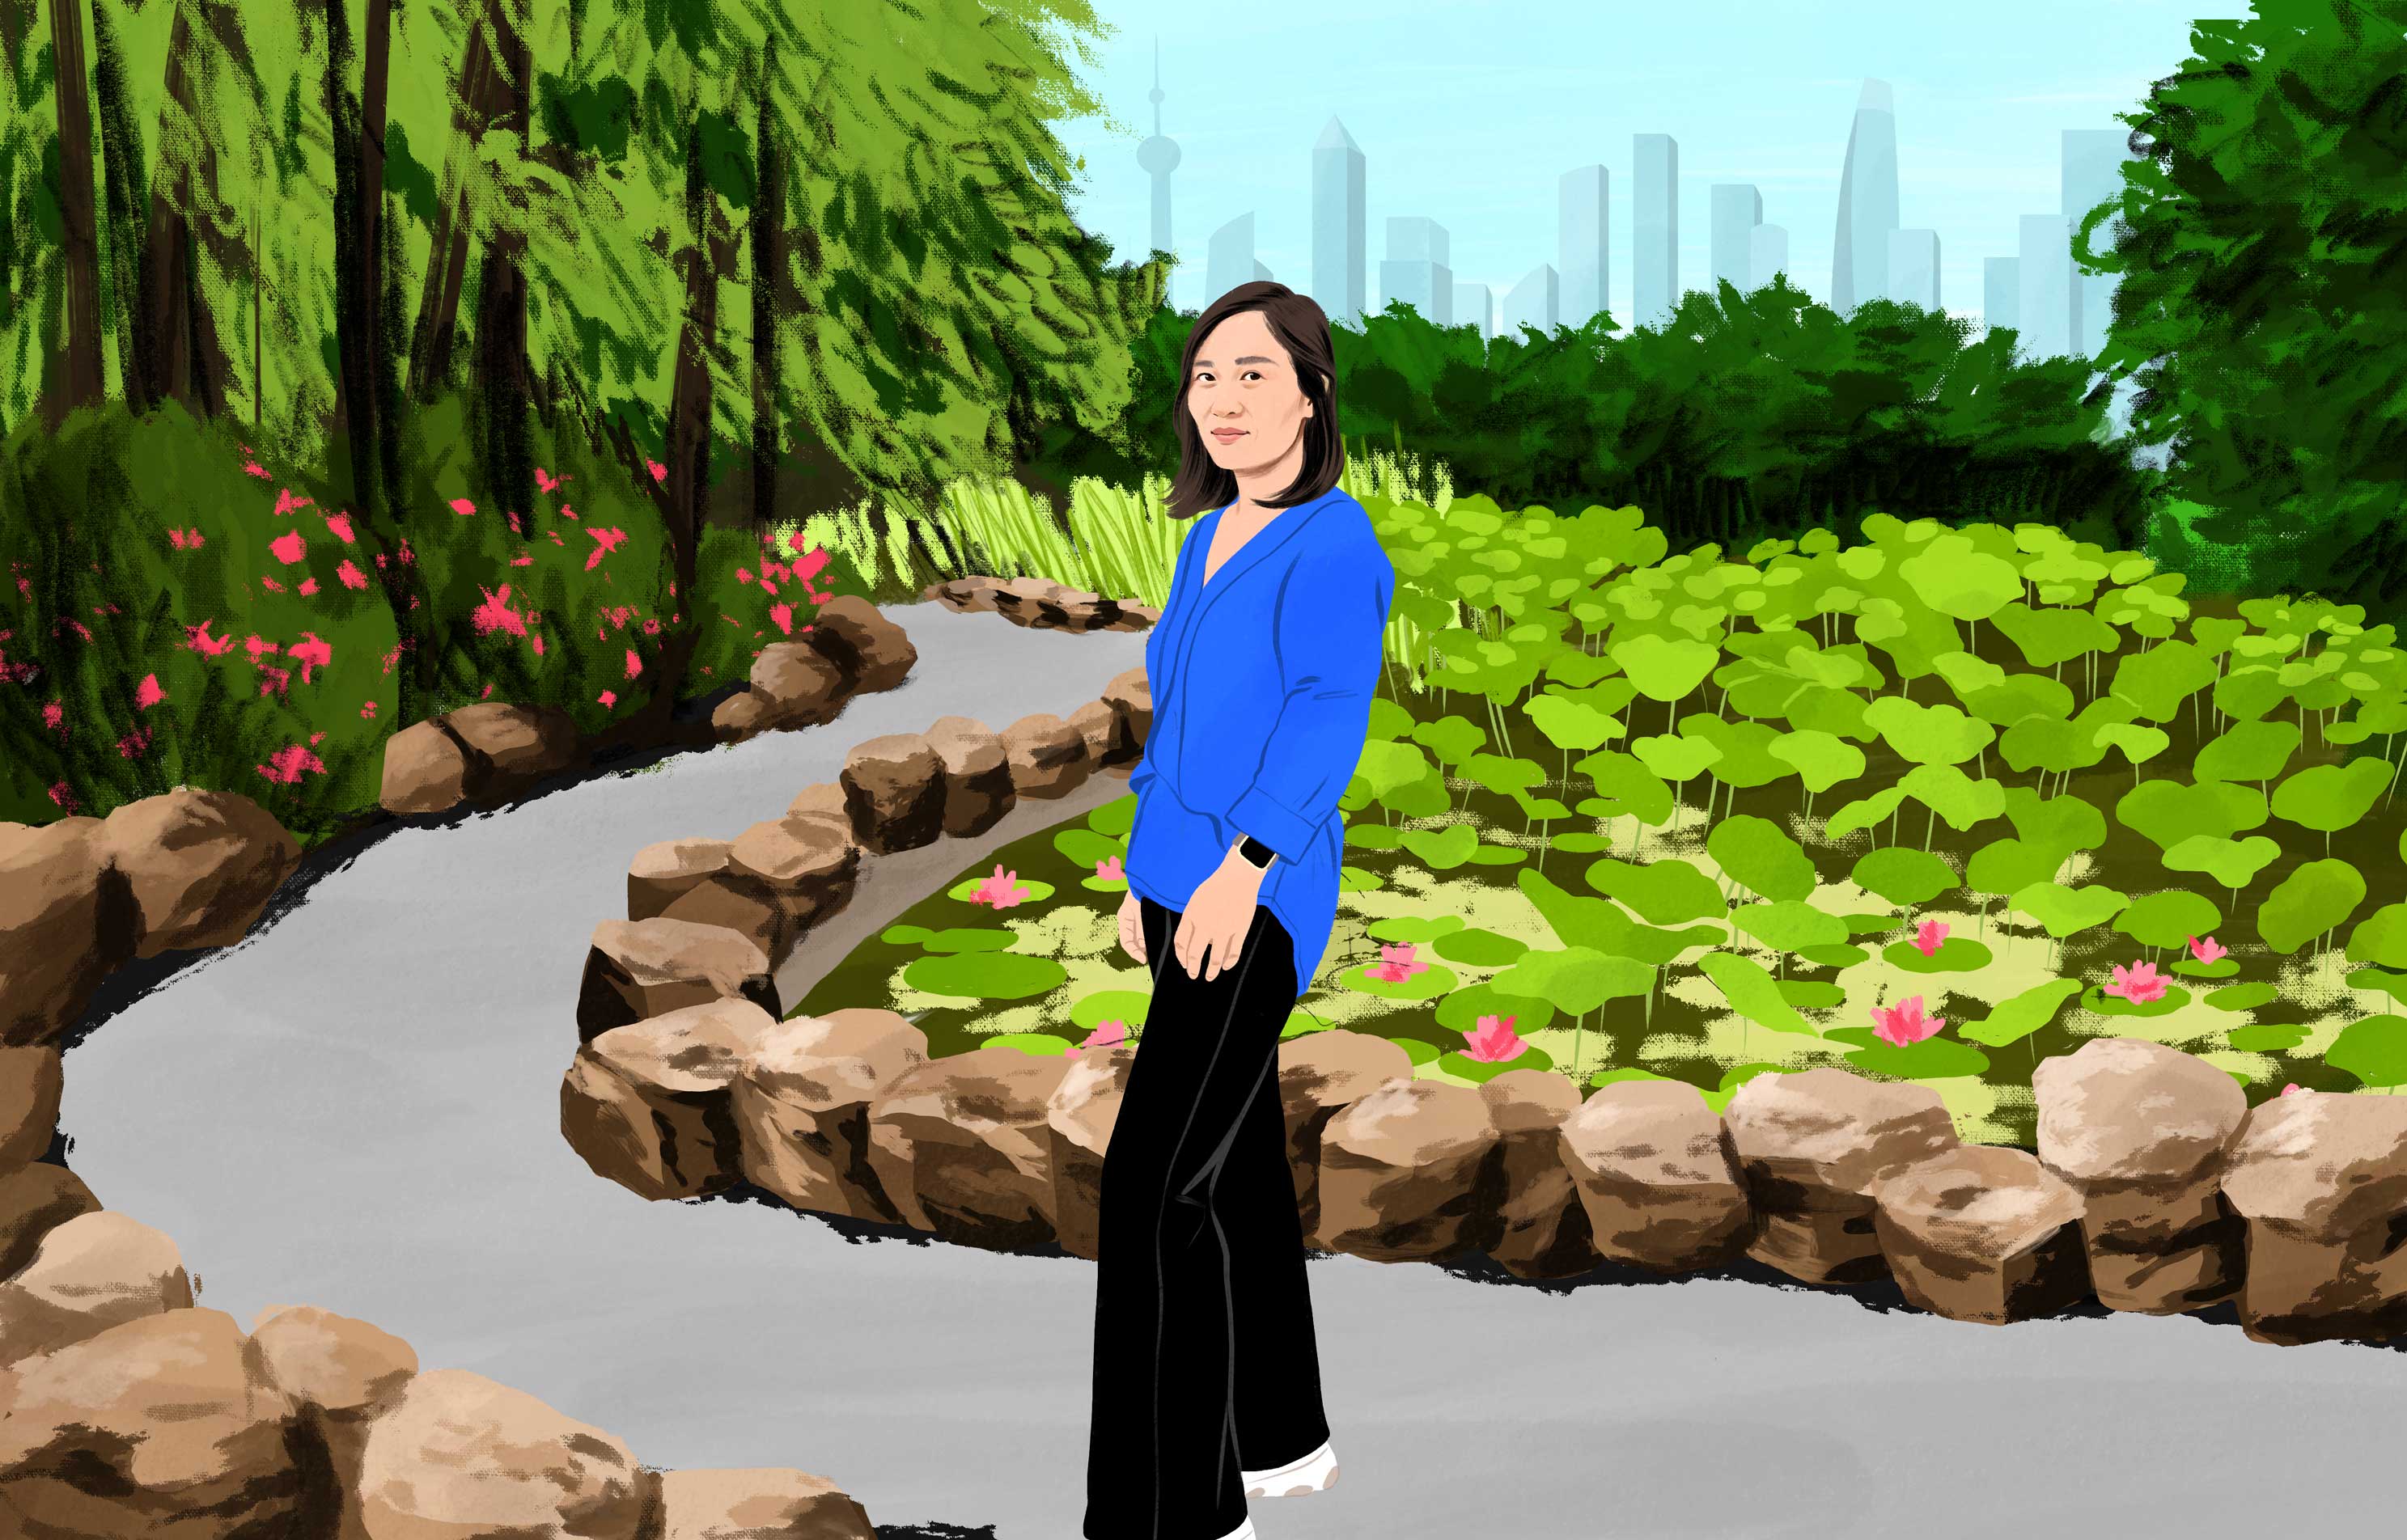 Xu smiler, mens hun går i en frodig bypark med moderne skyskrabere i baggrunden i det fjerne. 